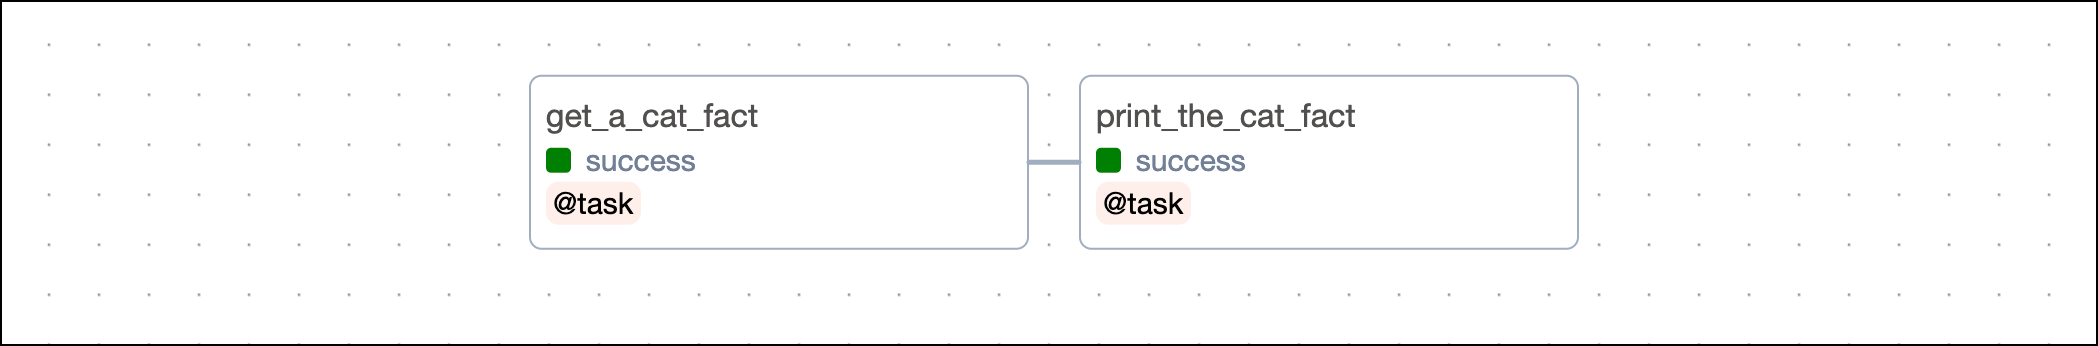 TaskFlow Dependencies